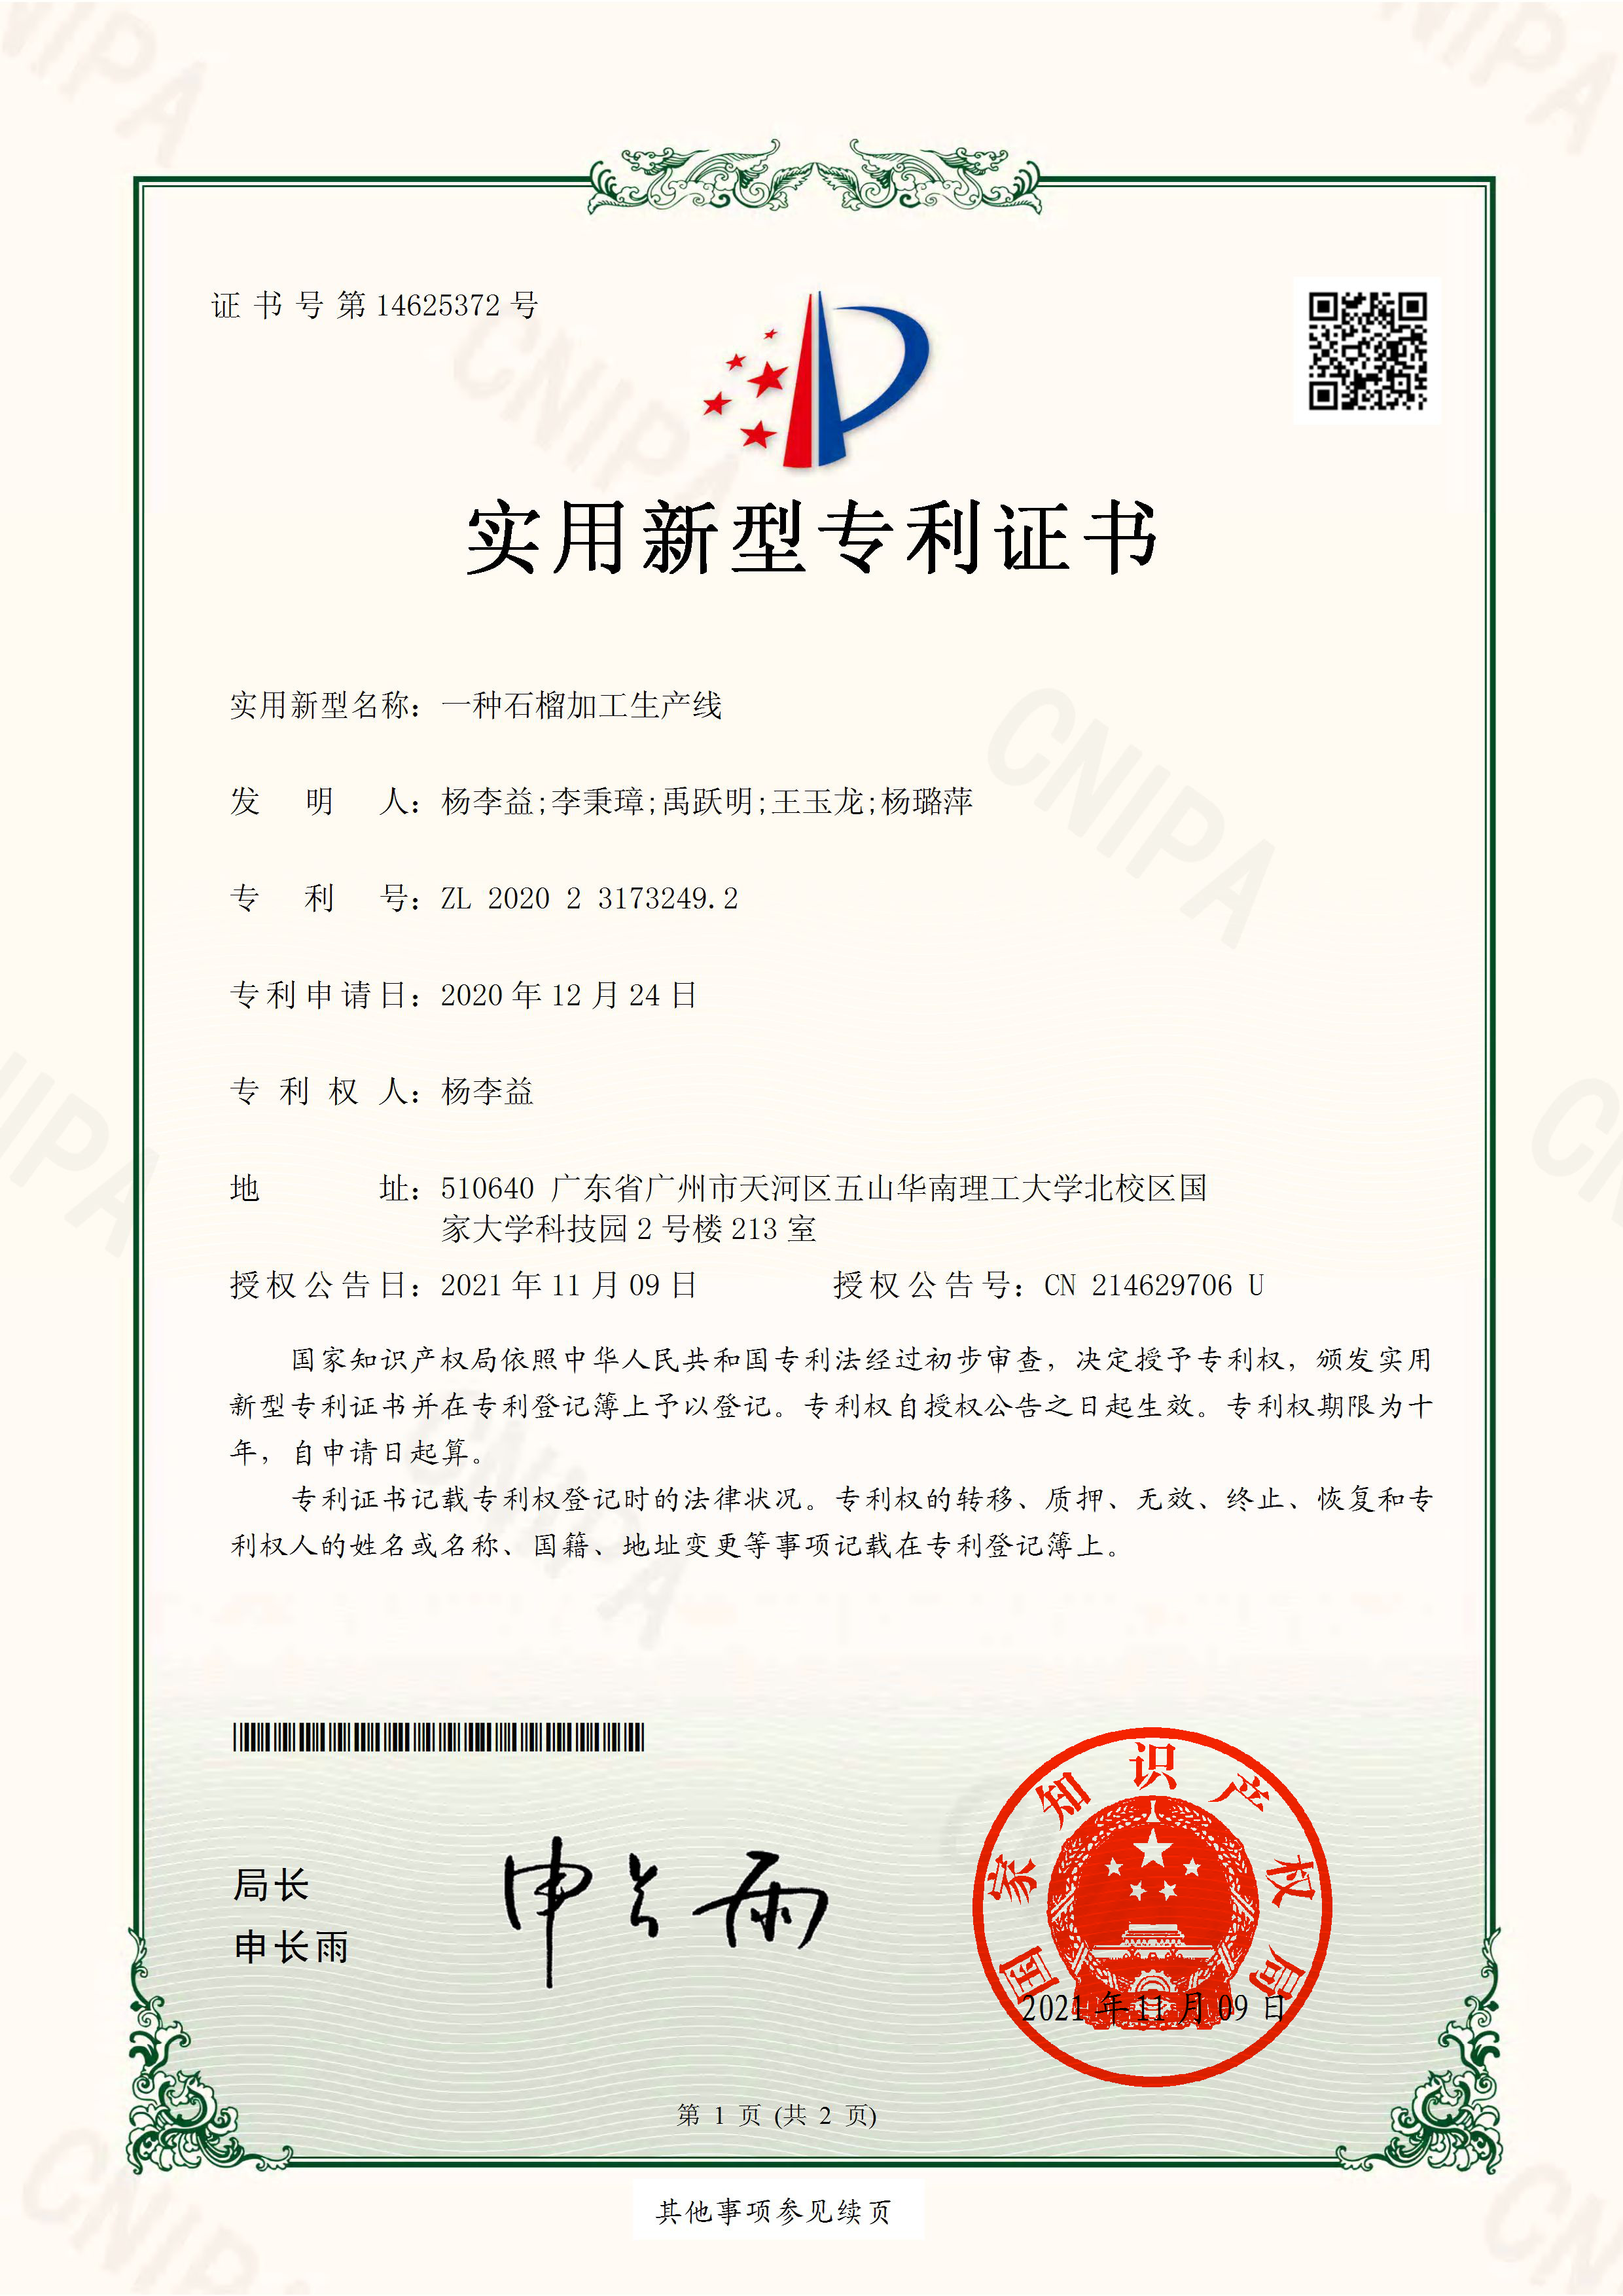 https://gzdaqiao.com/upload/杨李益专利之58——一种石榴加工生产线